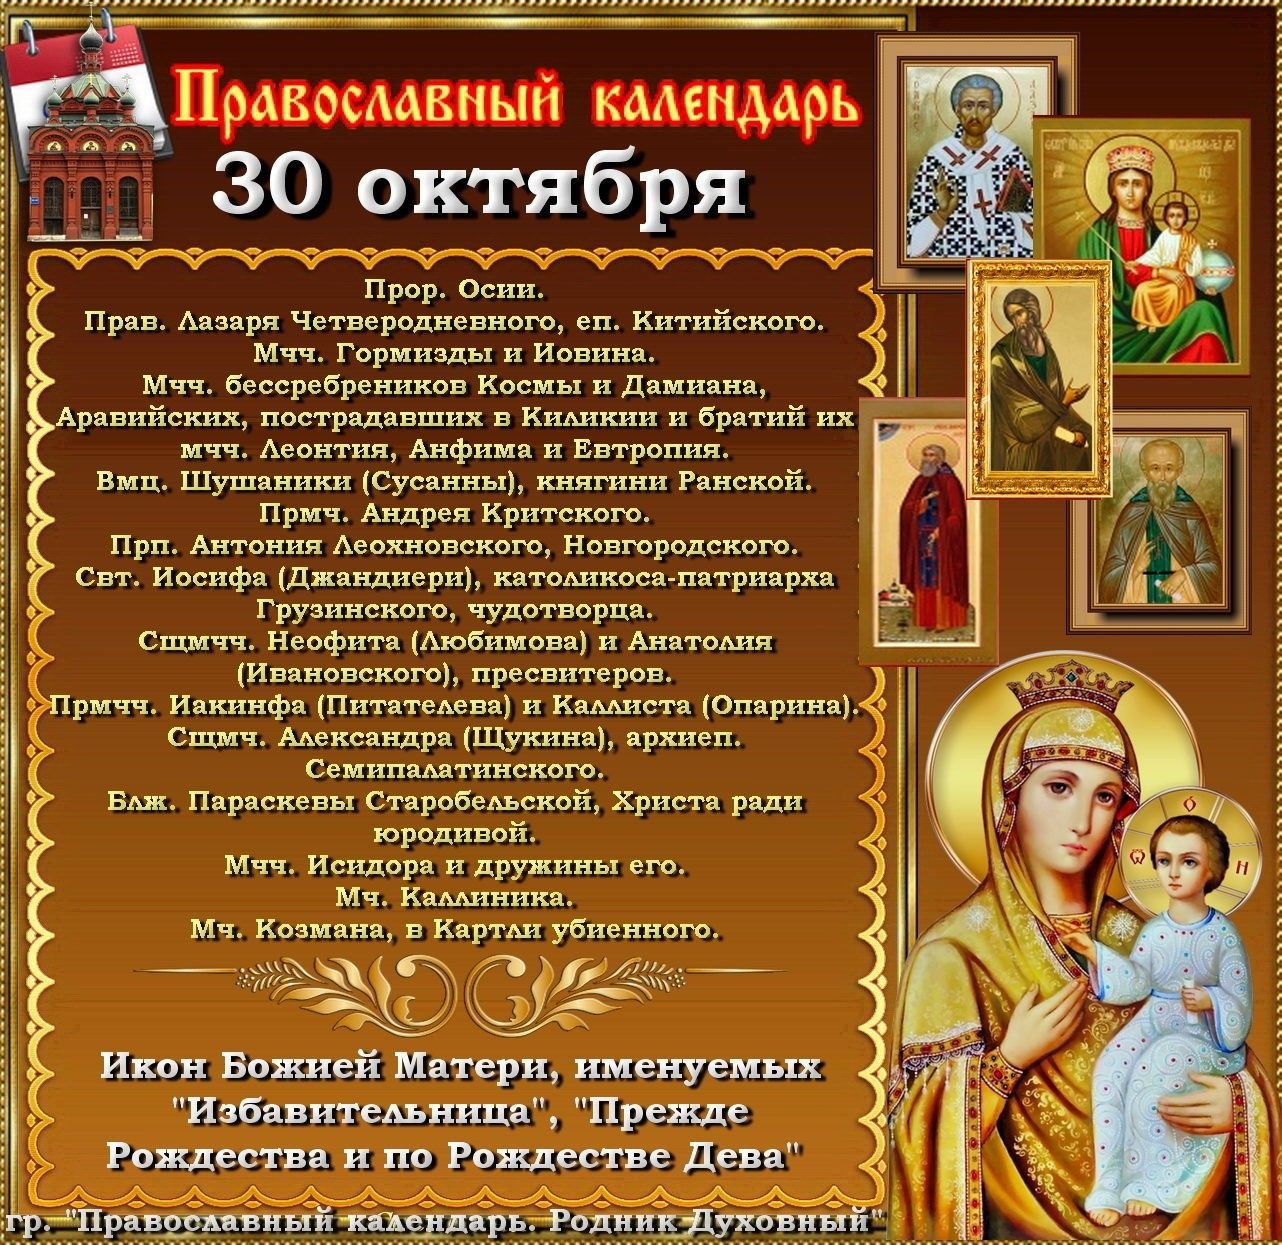 Даты празднования икон богородицы. 30 Октября праздник православный. 30 Октября православный календарь. Церковная Божья Матерь праздник. 30 Ноября праздник православный.